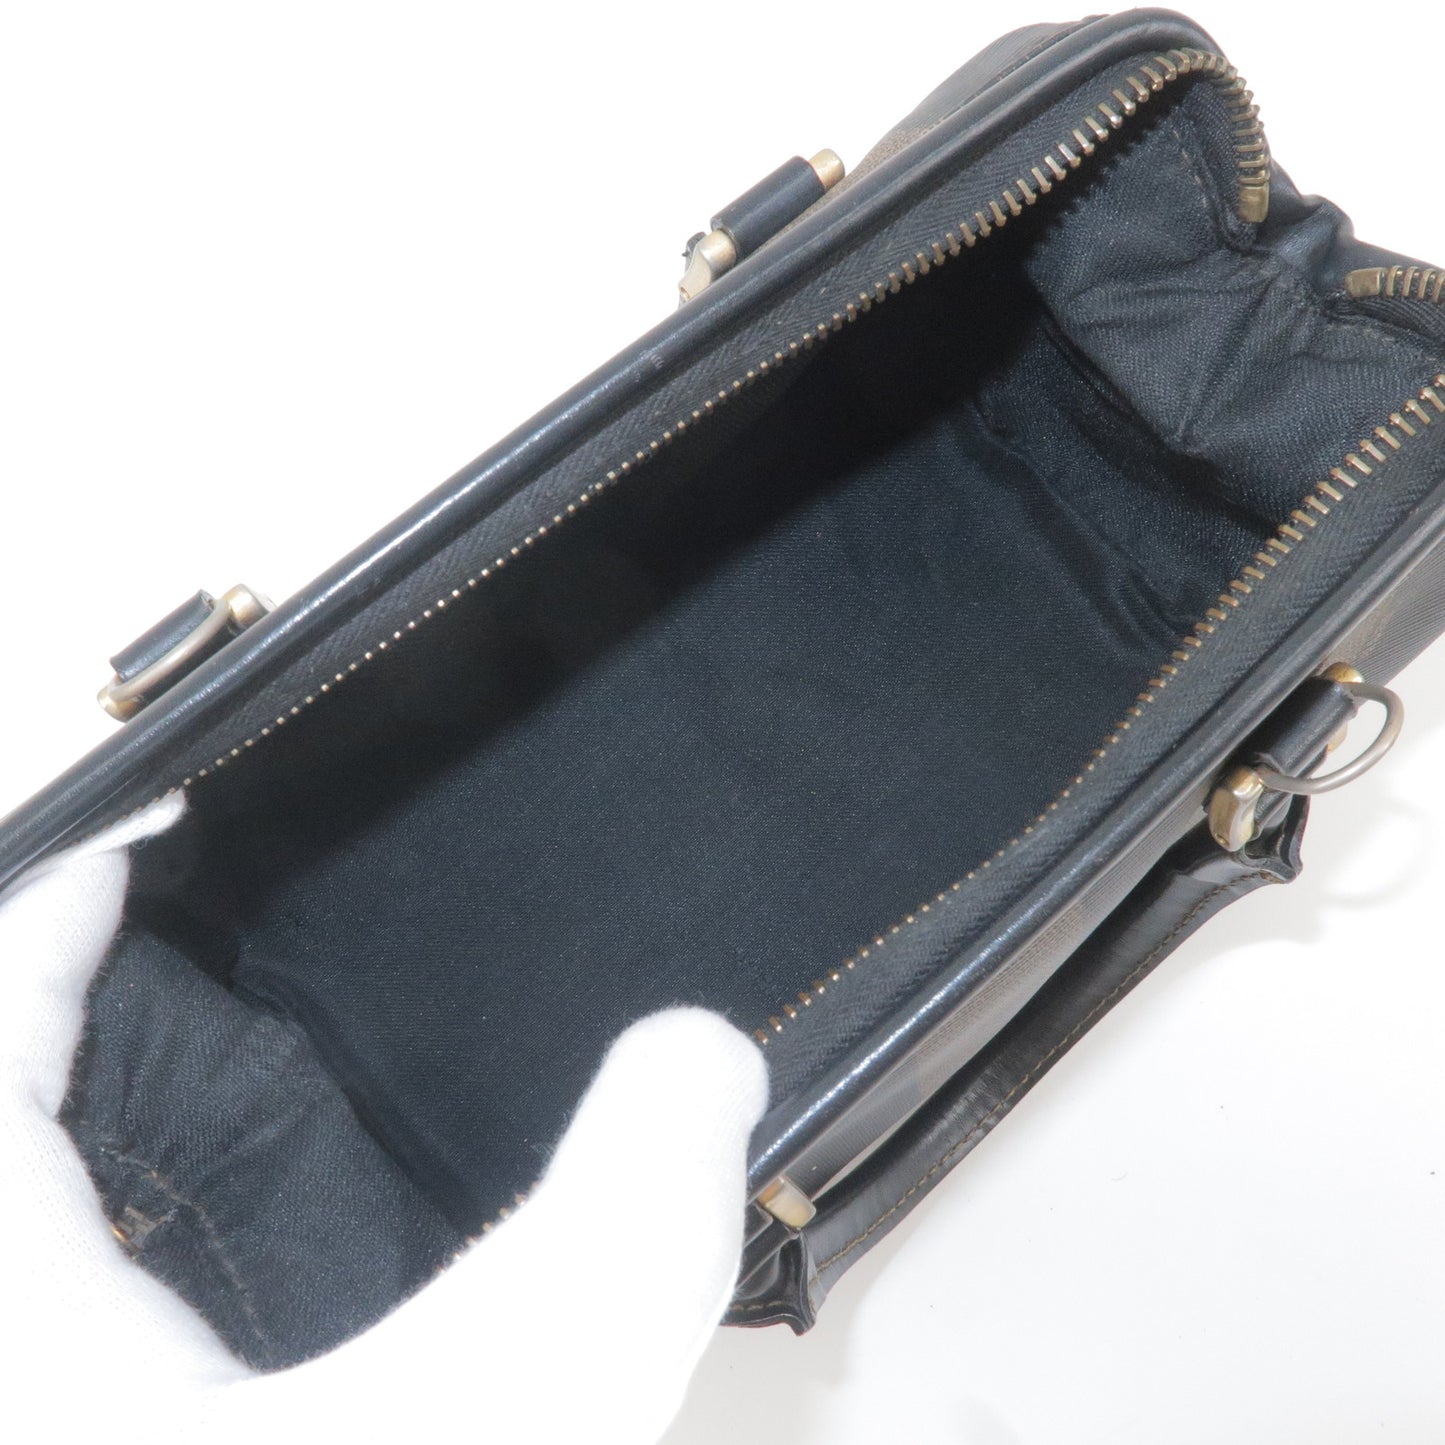 FENDI Pequin PVC Leather Boston Bag Hand Bag Khaki Black